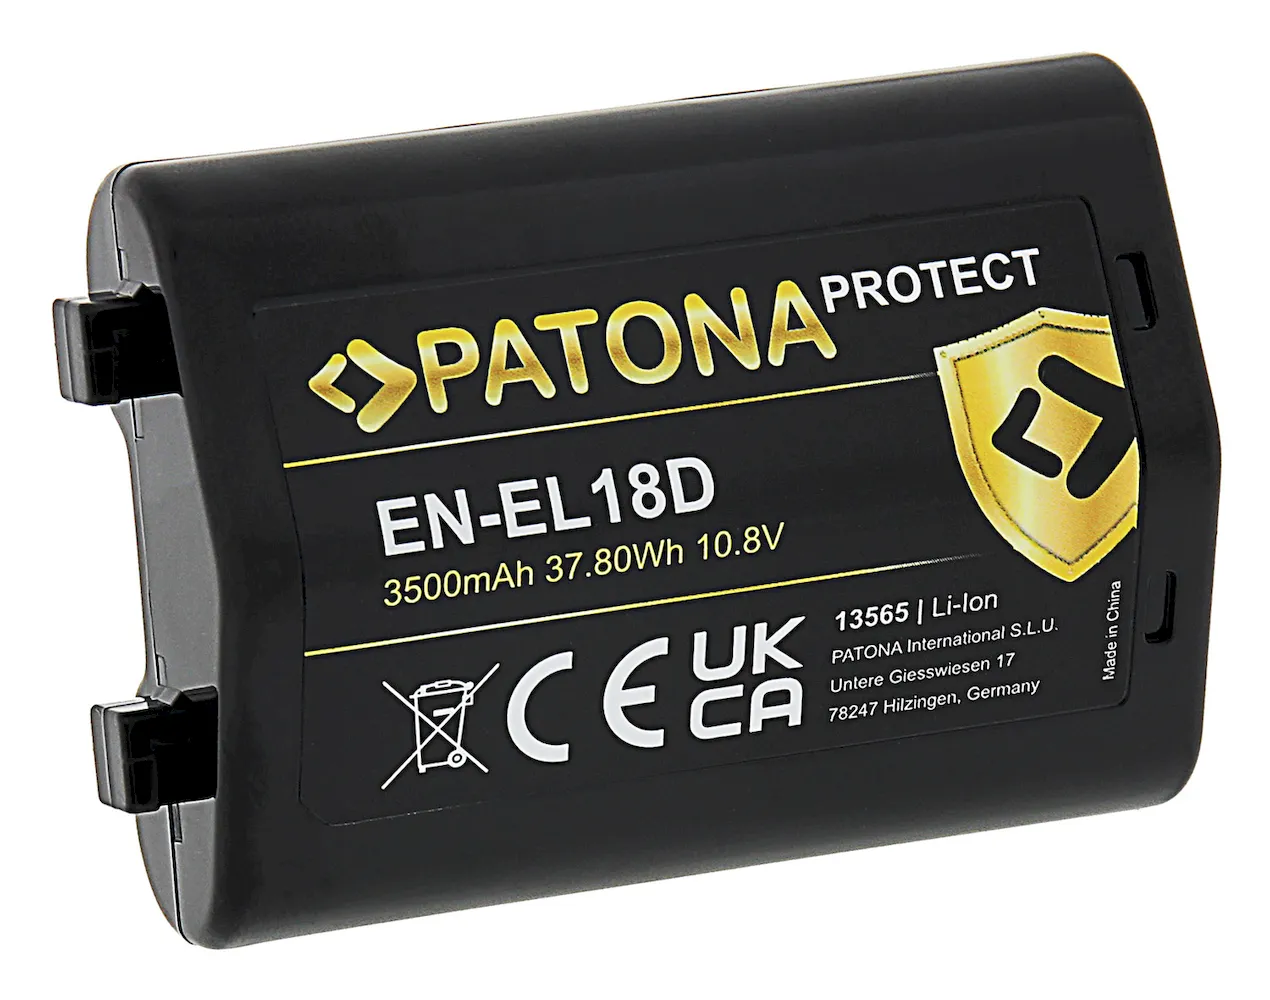 Acumulator replace Patona Protect EN-EL18D 3500mAh pentru Nikon Z9 D6 13565